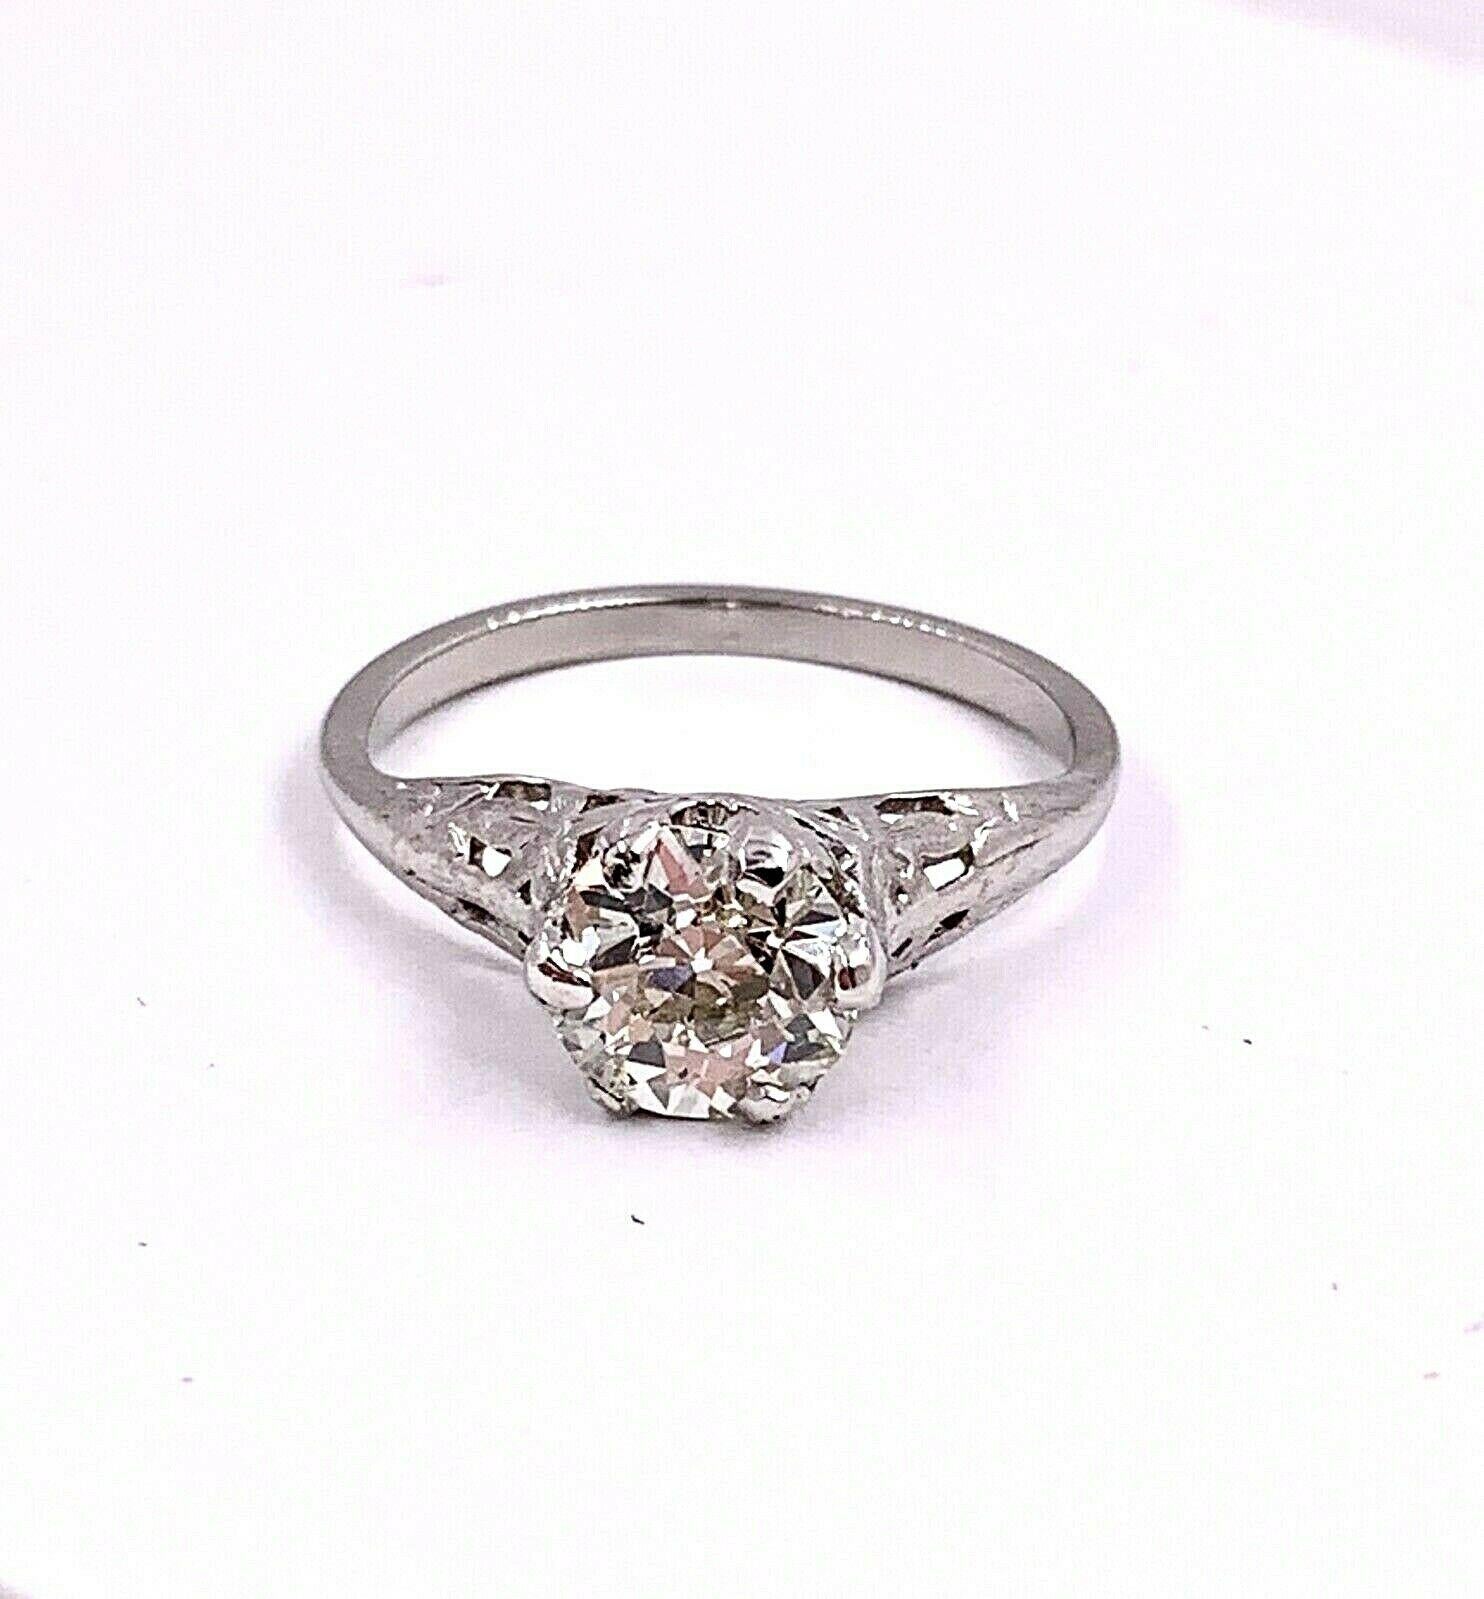 Antique Platinum Old Cut Diamond Engagement Ring 1.01 Carat 5